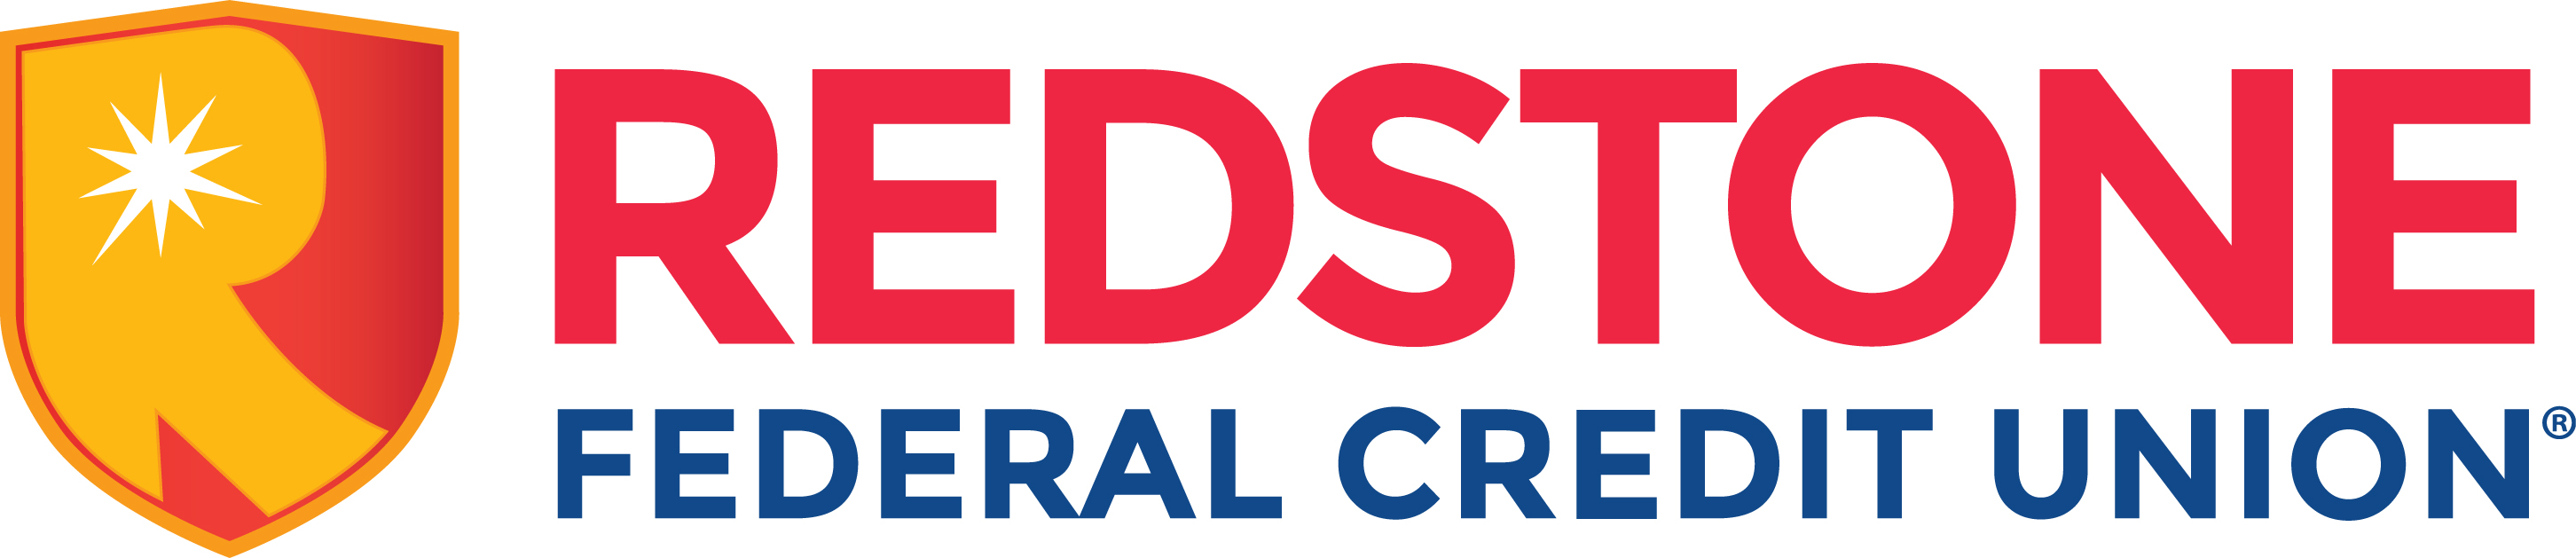 Unión de crédito federal de Redstone (nivel 4)